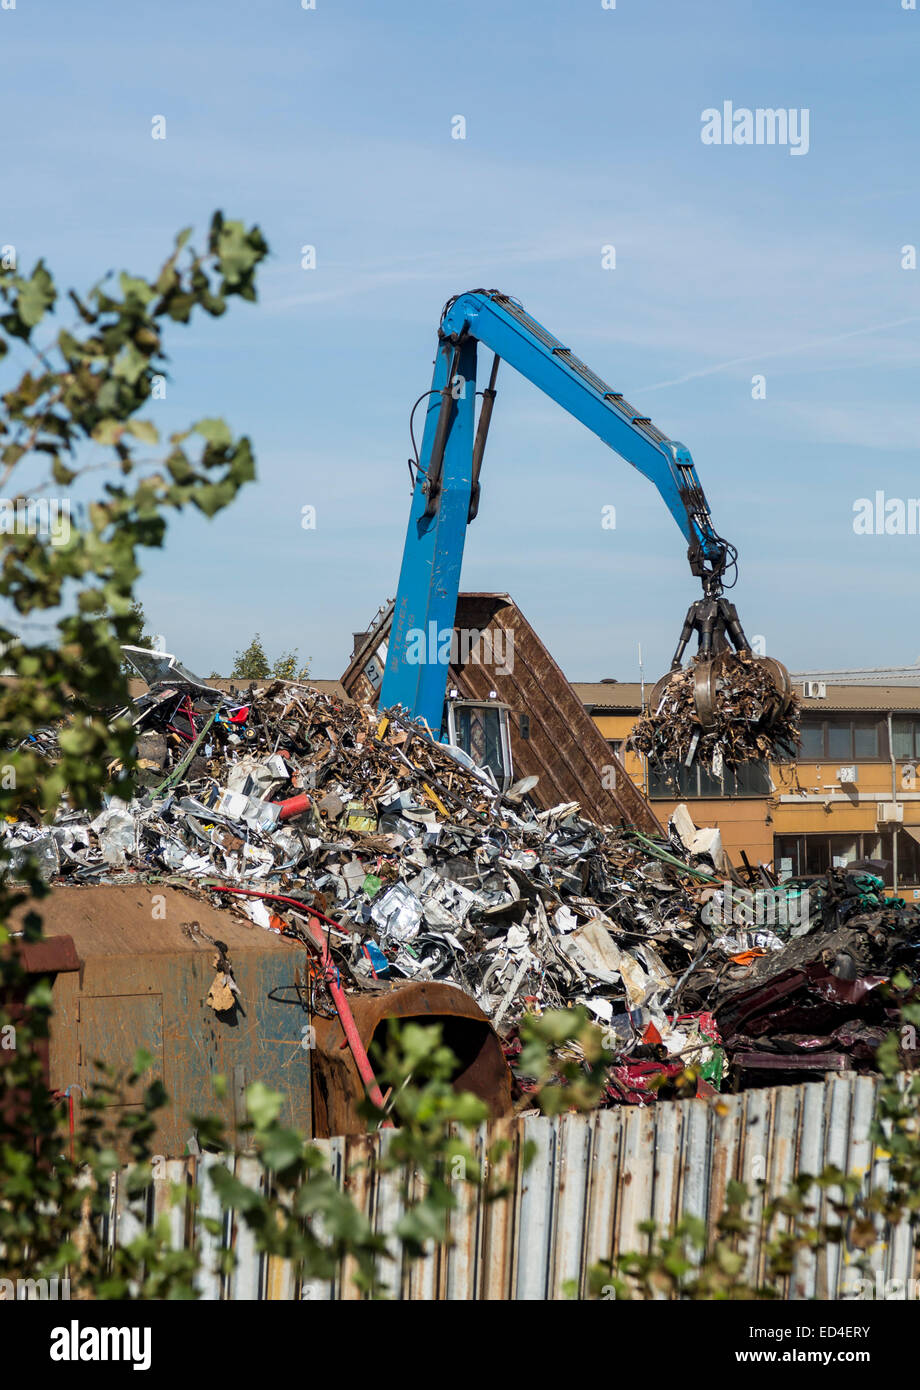 Rottami di metallo junk yard a Norimberga in Germania con una gru e grandi ganasce afferra la lavorazione del metallo Foto Stock